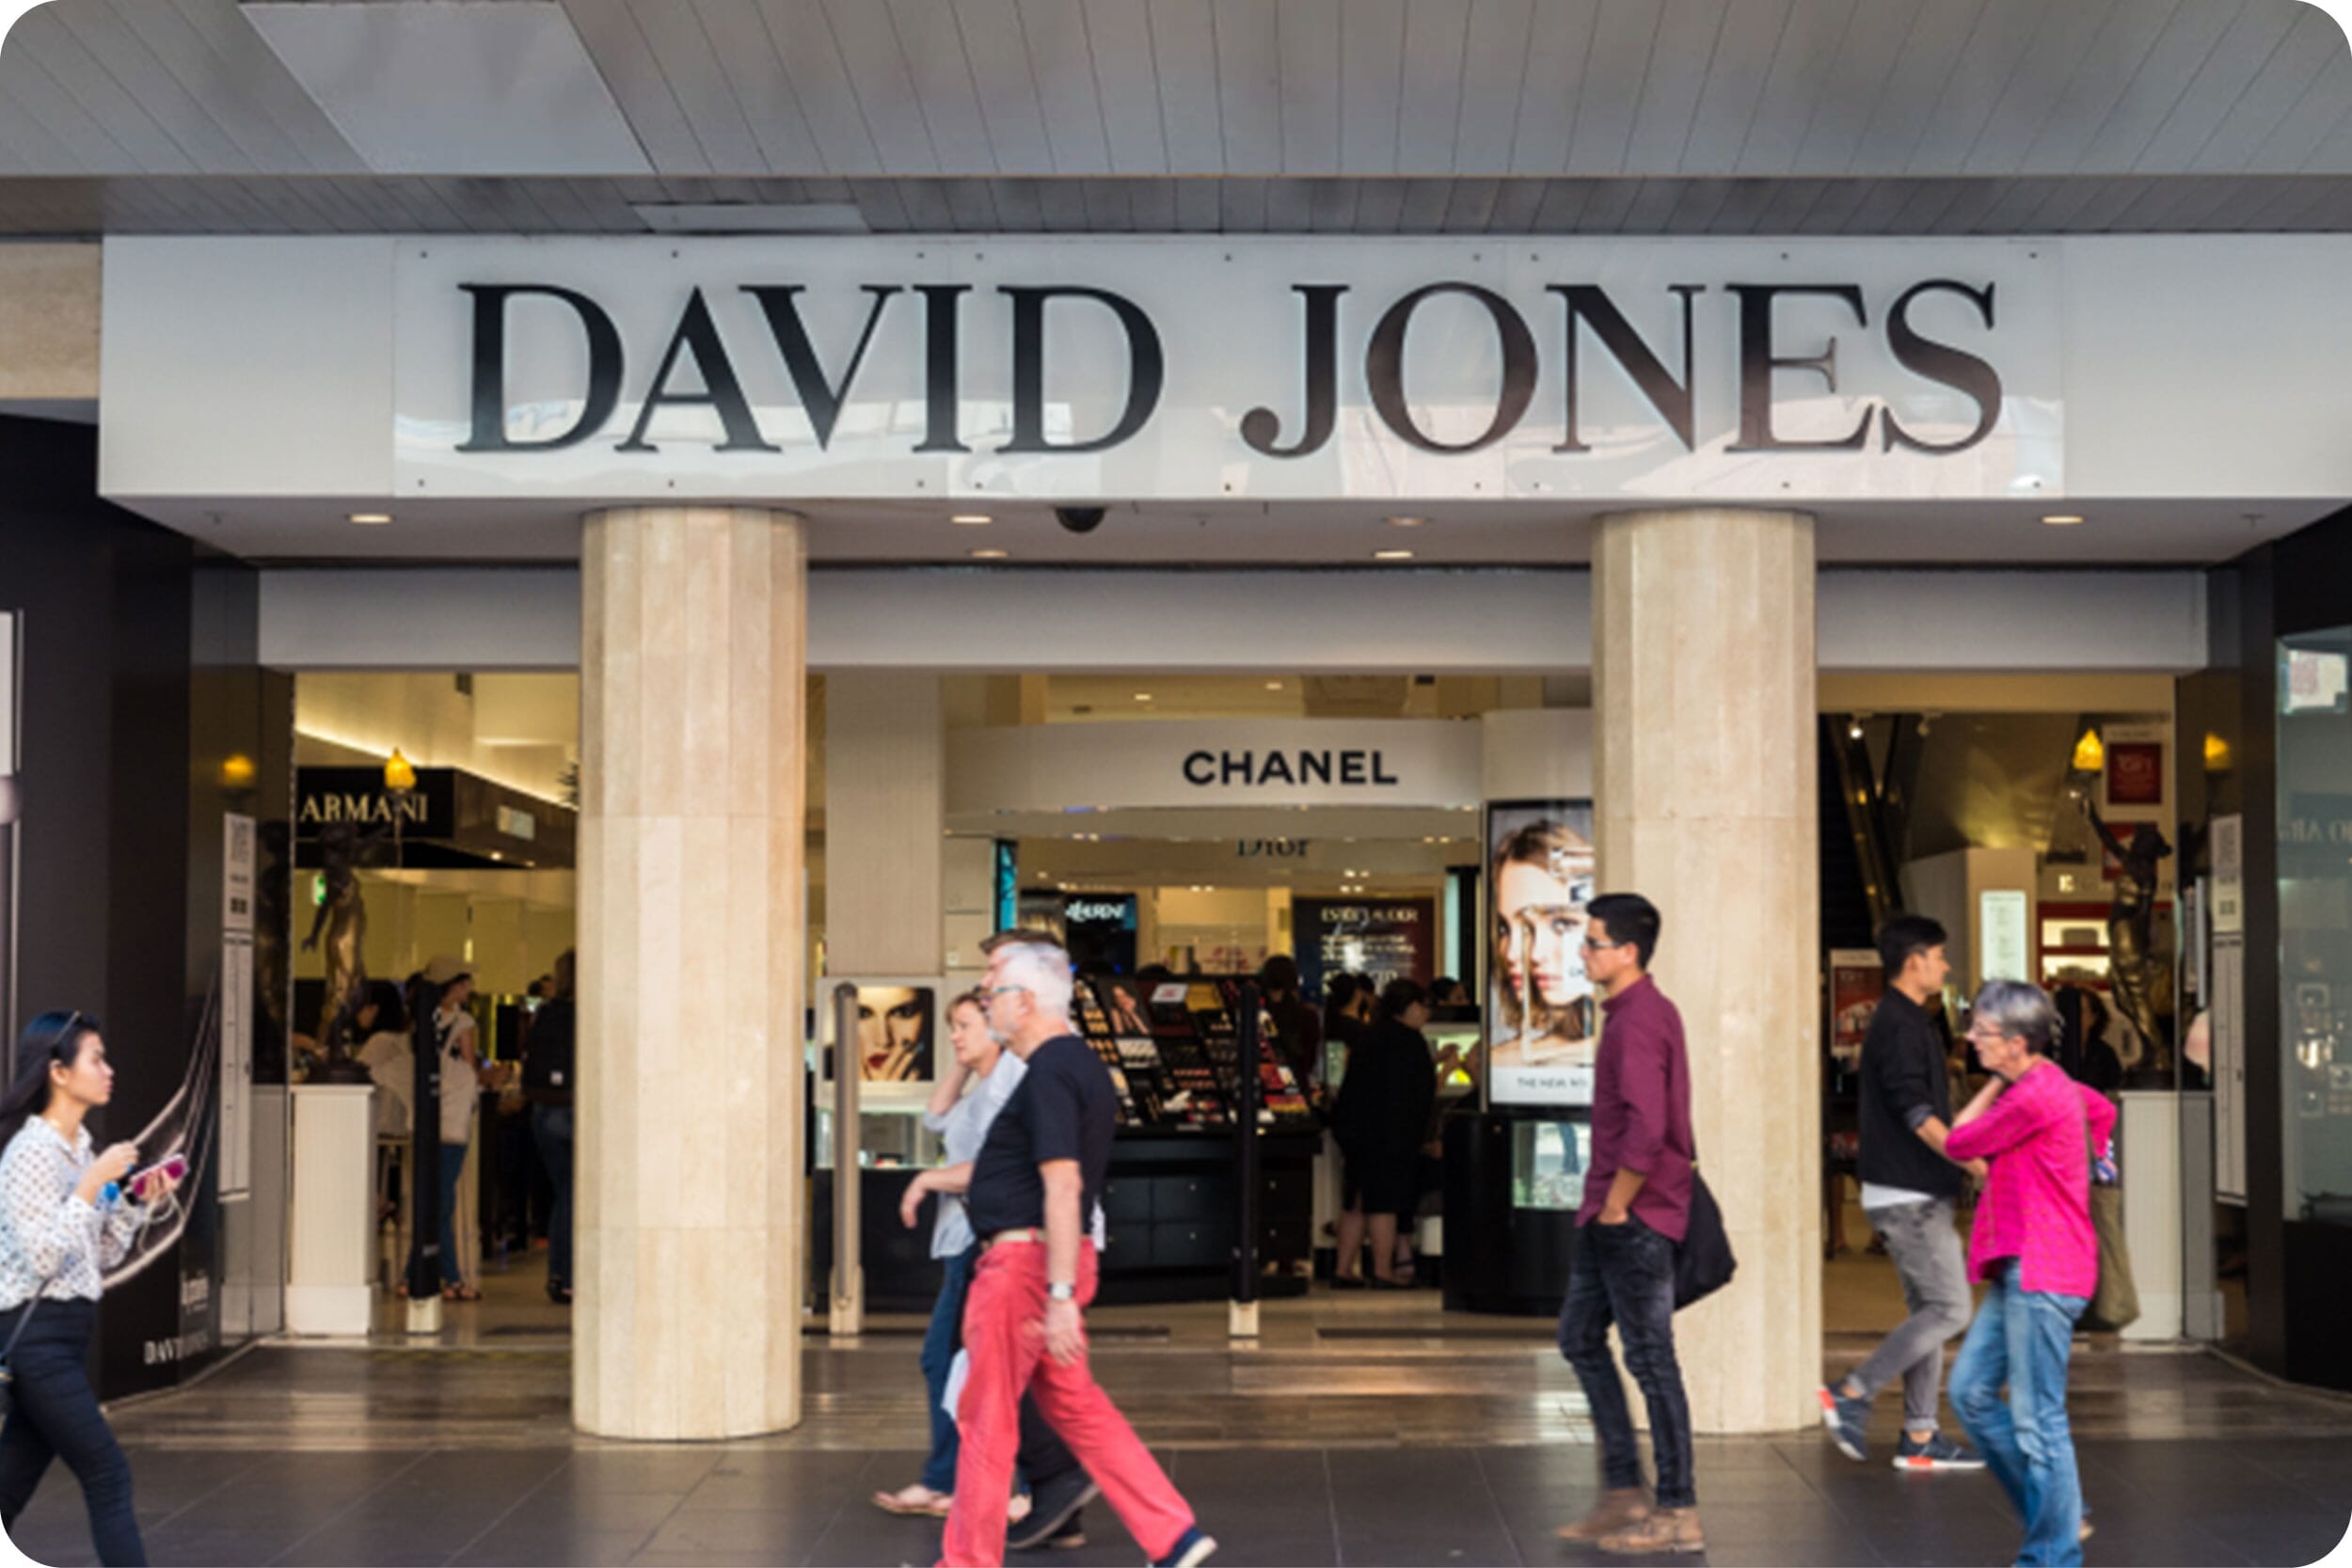 David Jones - Store front